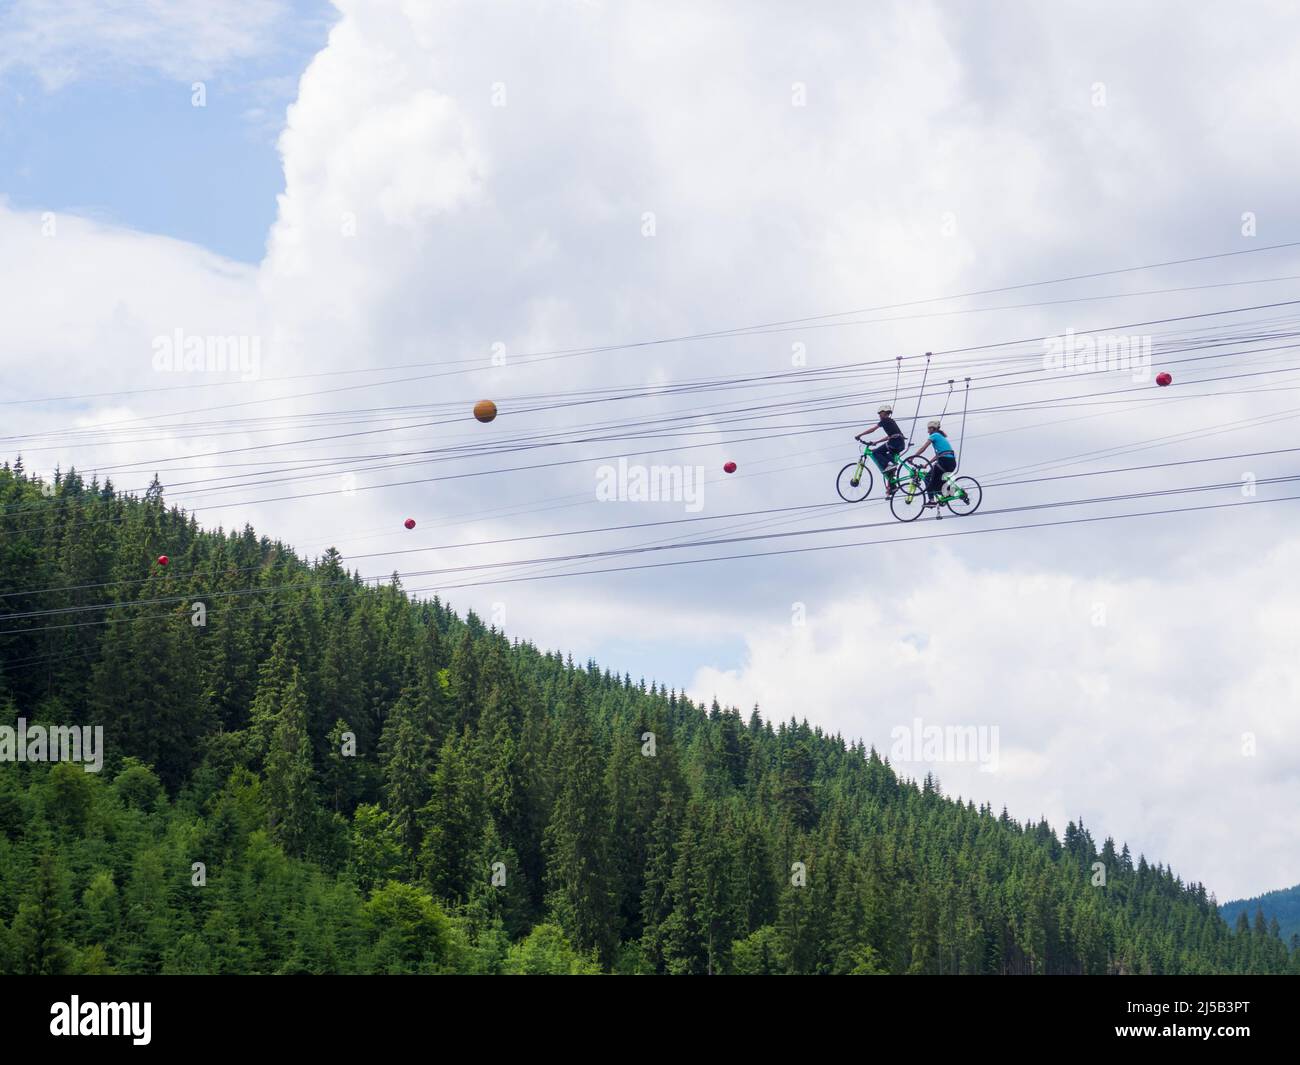 Zip bike on the ski resort Bukovel Stock Photo